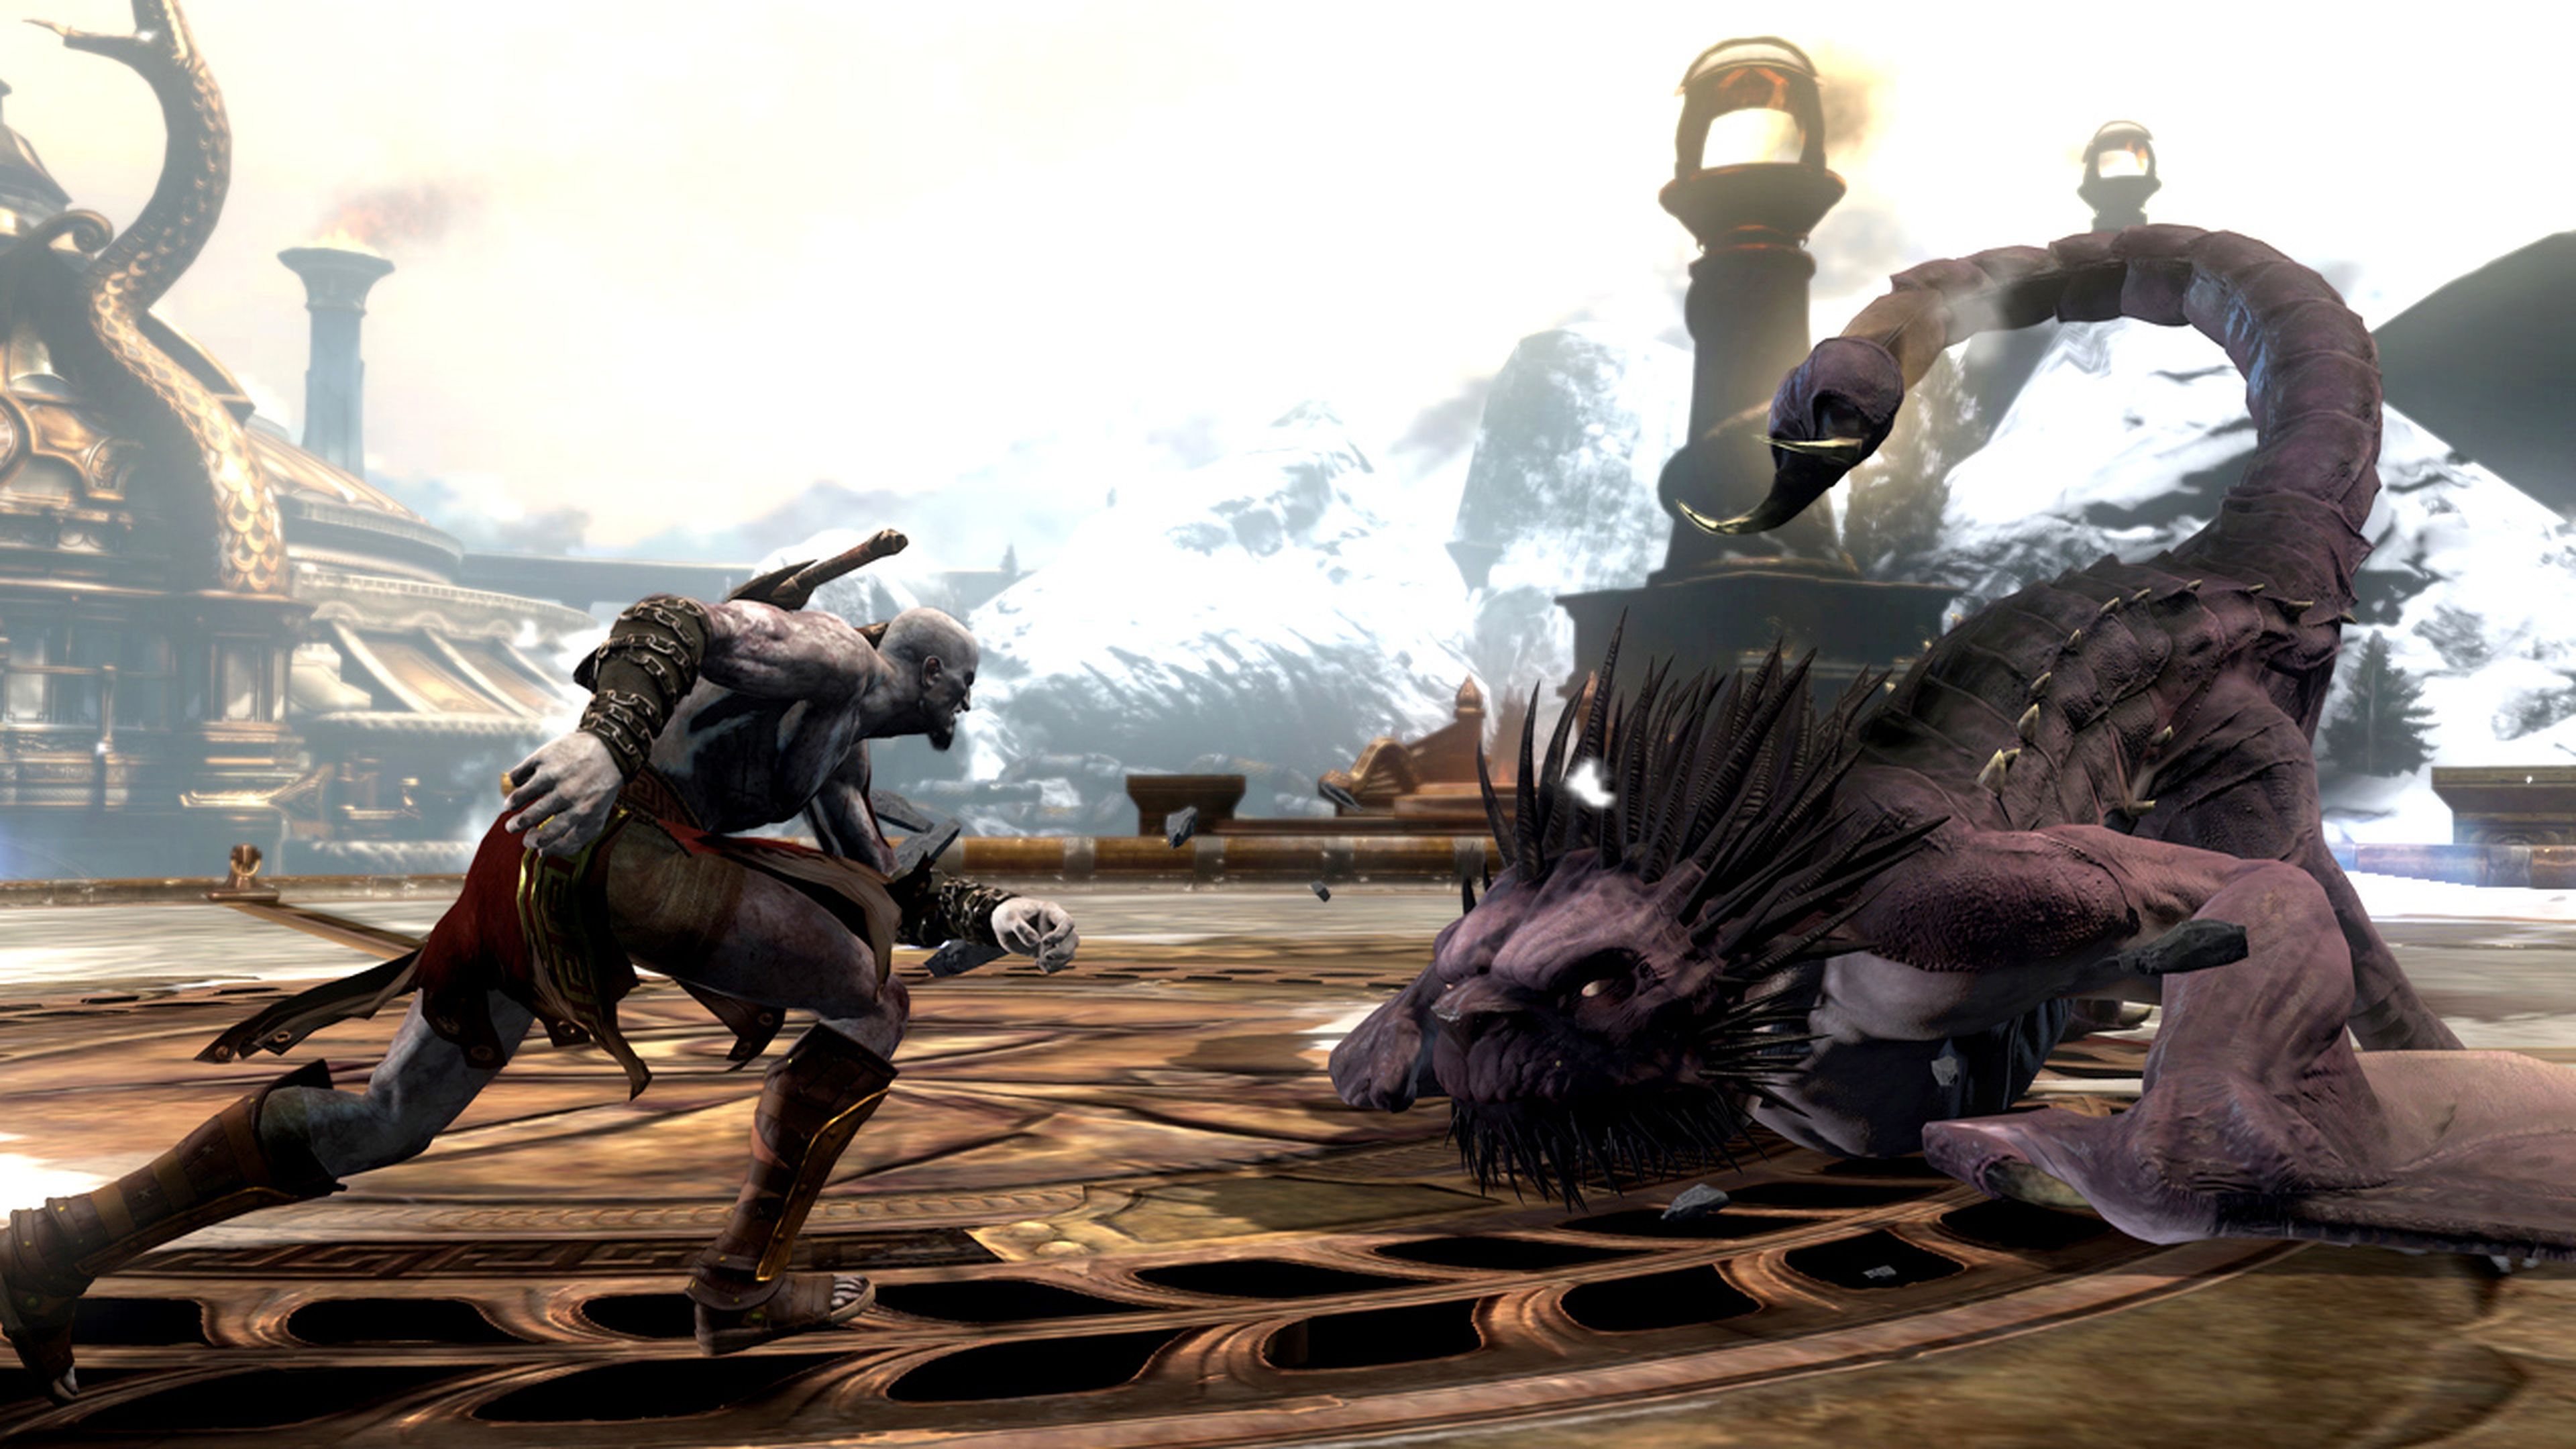 Probamos God of War Ascension en PS3